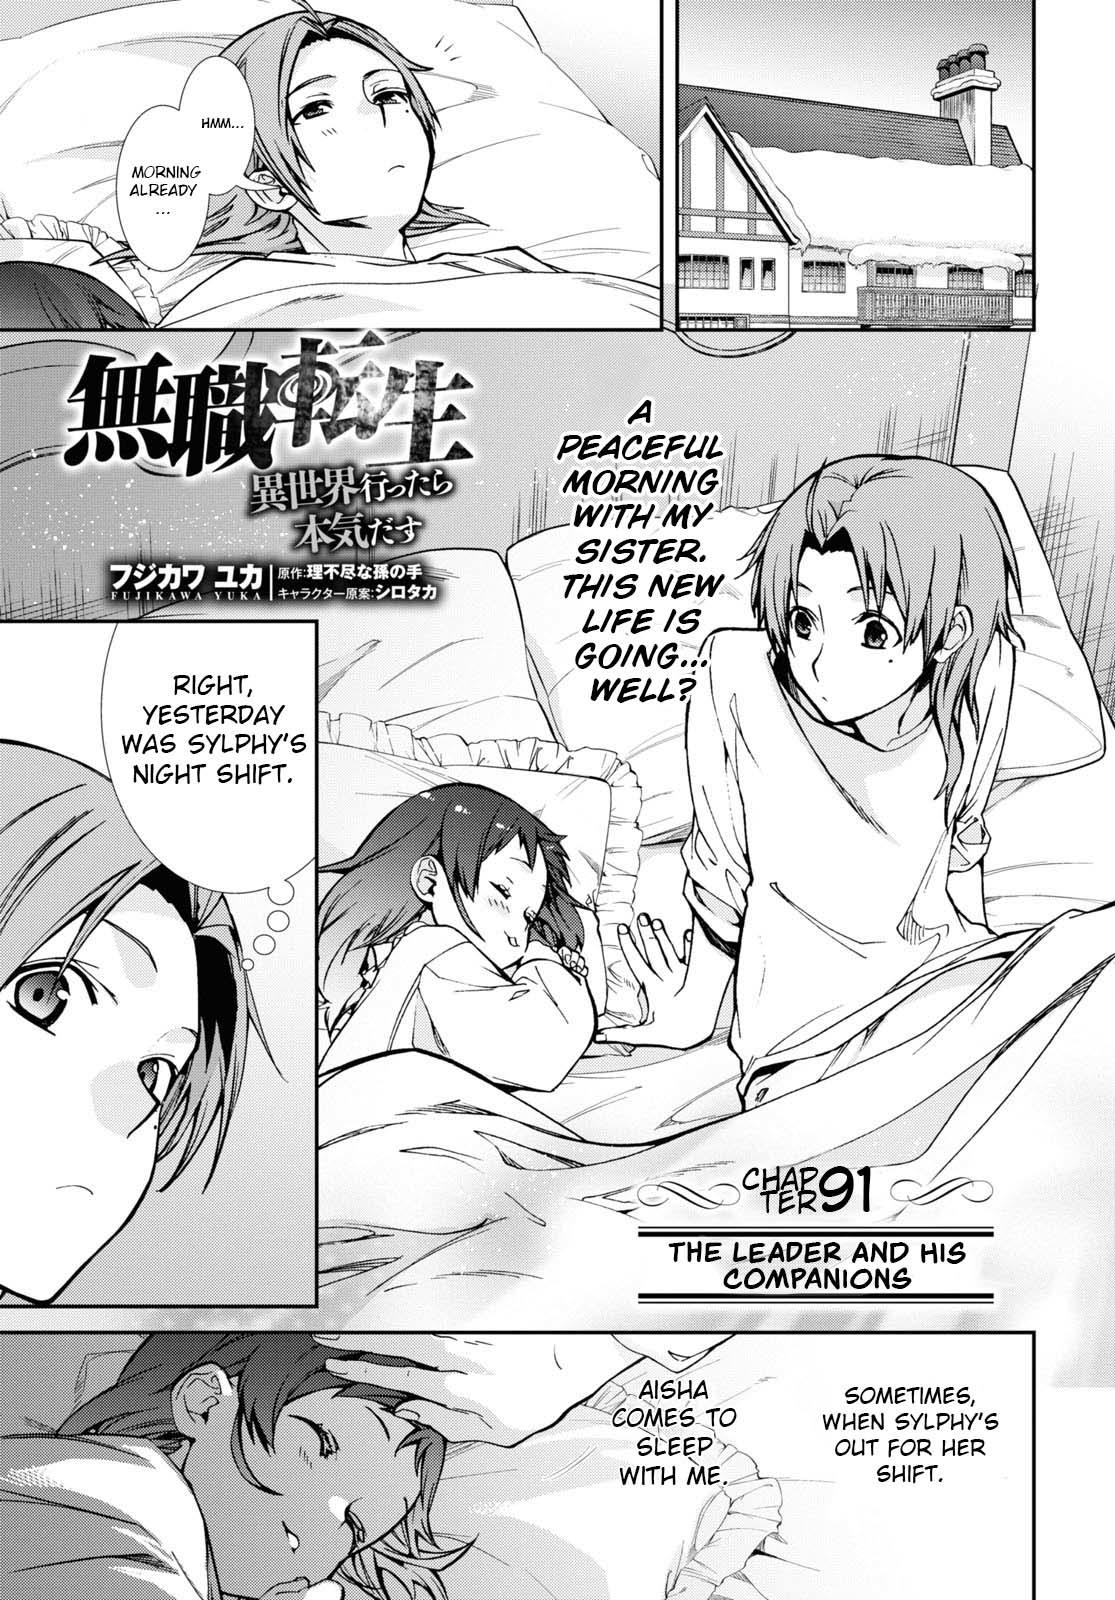 Mushoku Tensei: Jobless Reincarnation, Chapter 84 - Mushoku Tensei: Jobless  Reincarnation Manga Online